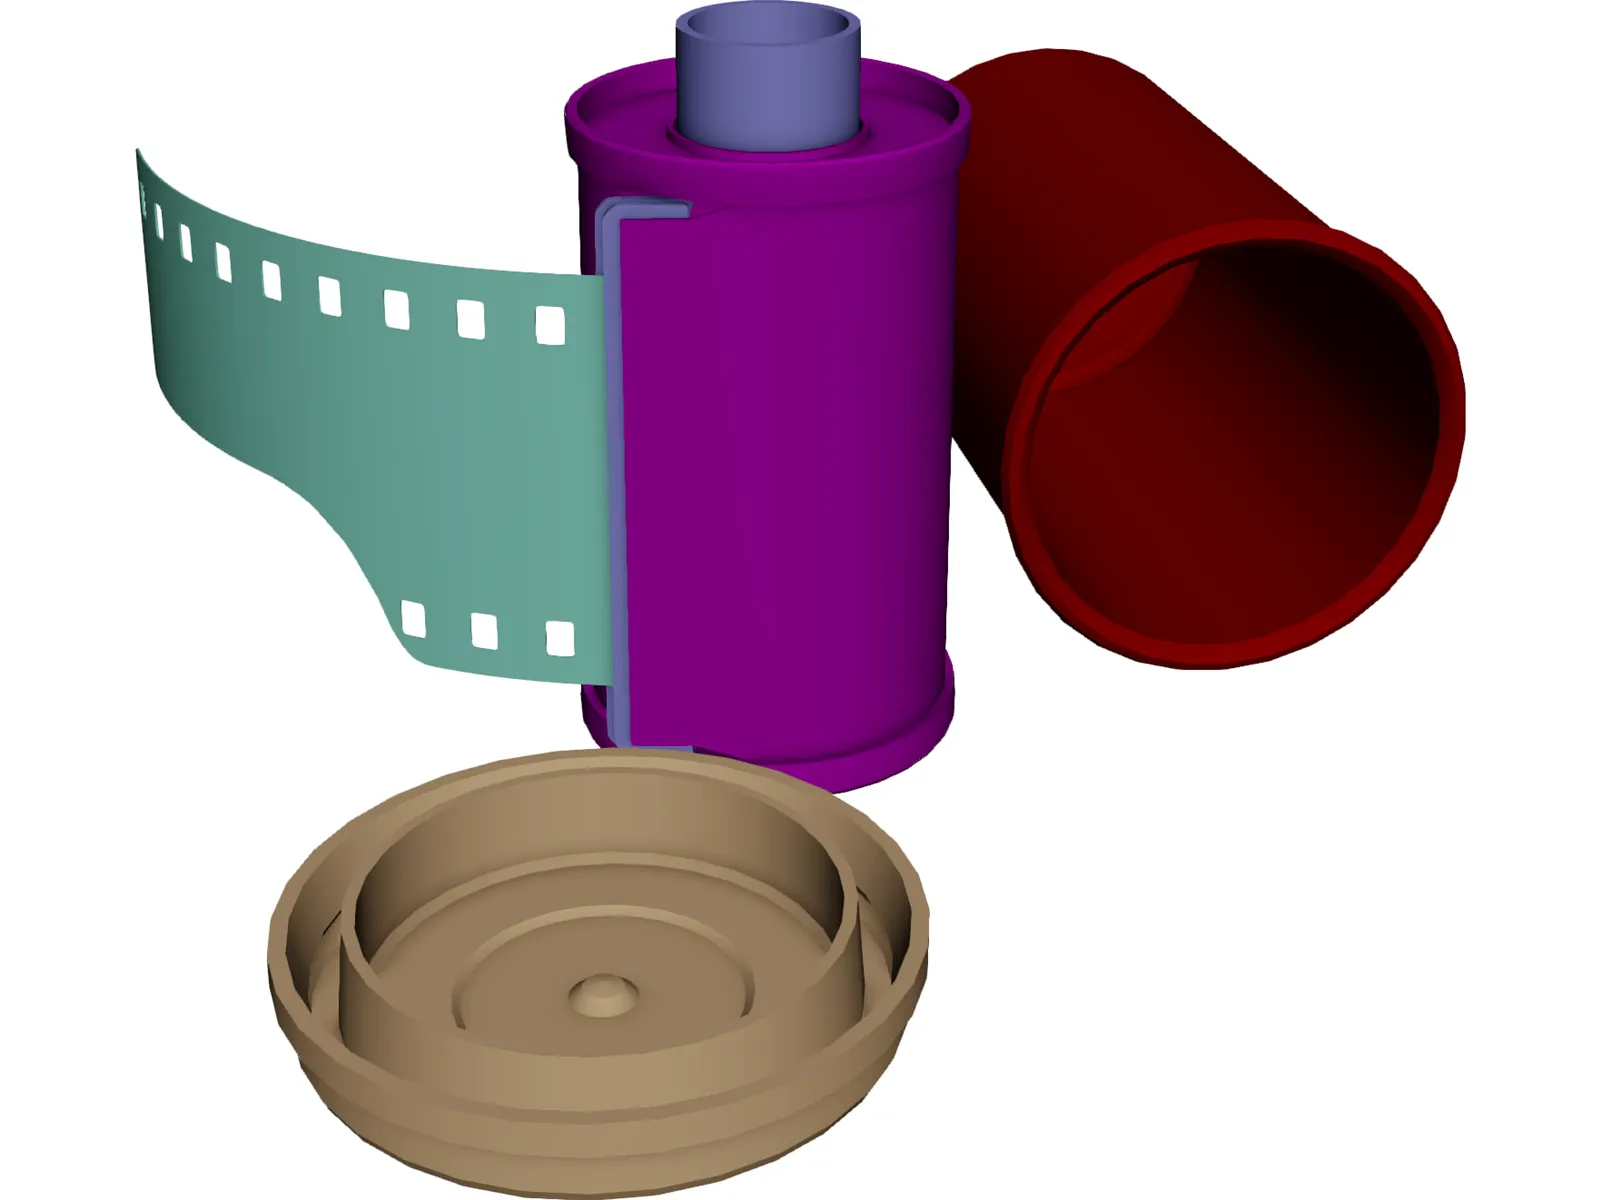 Kodak Film 3D Model